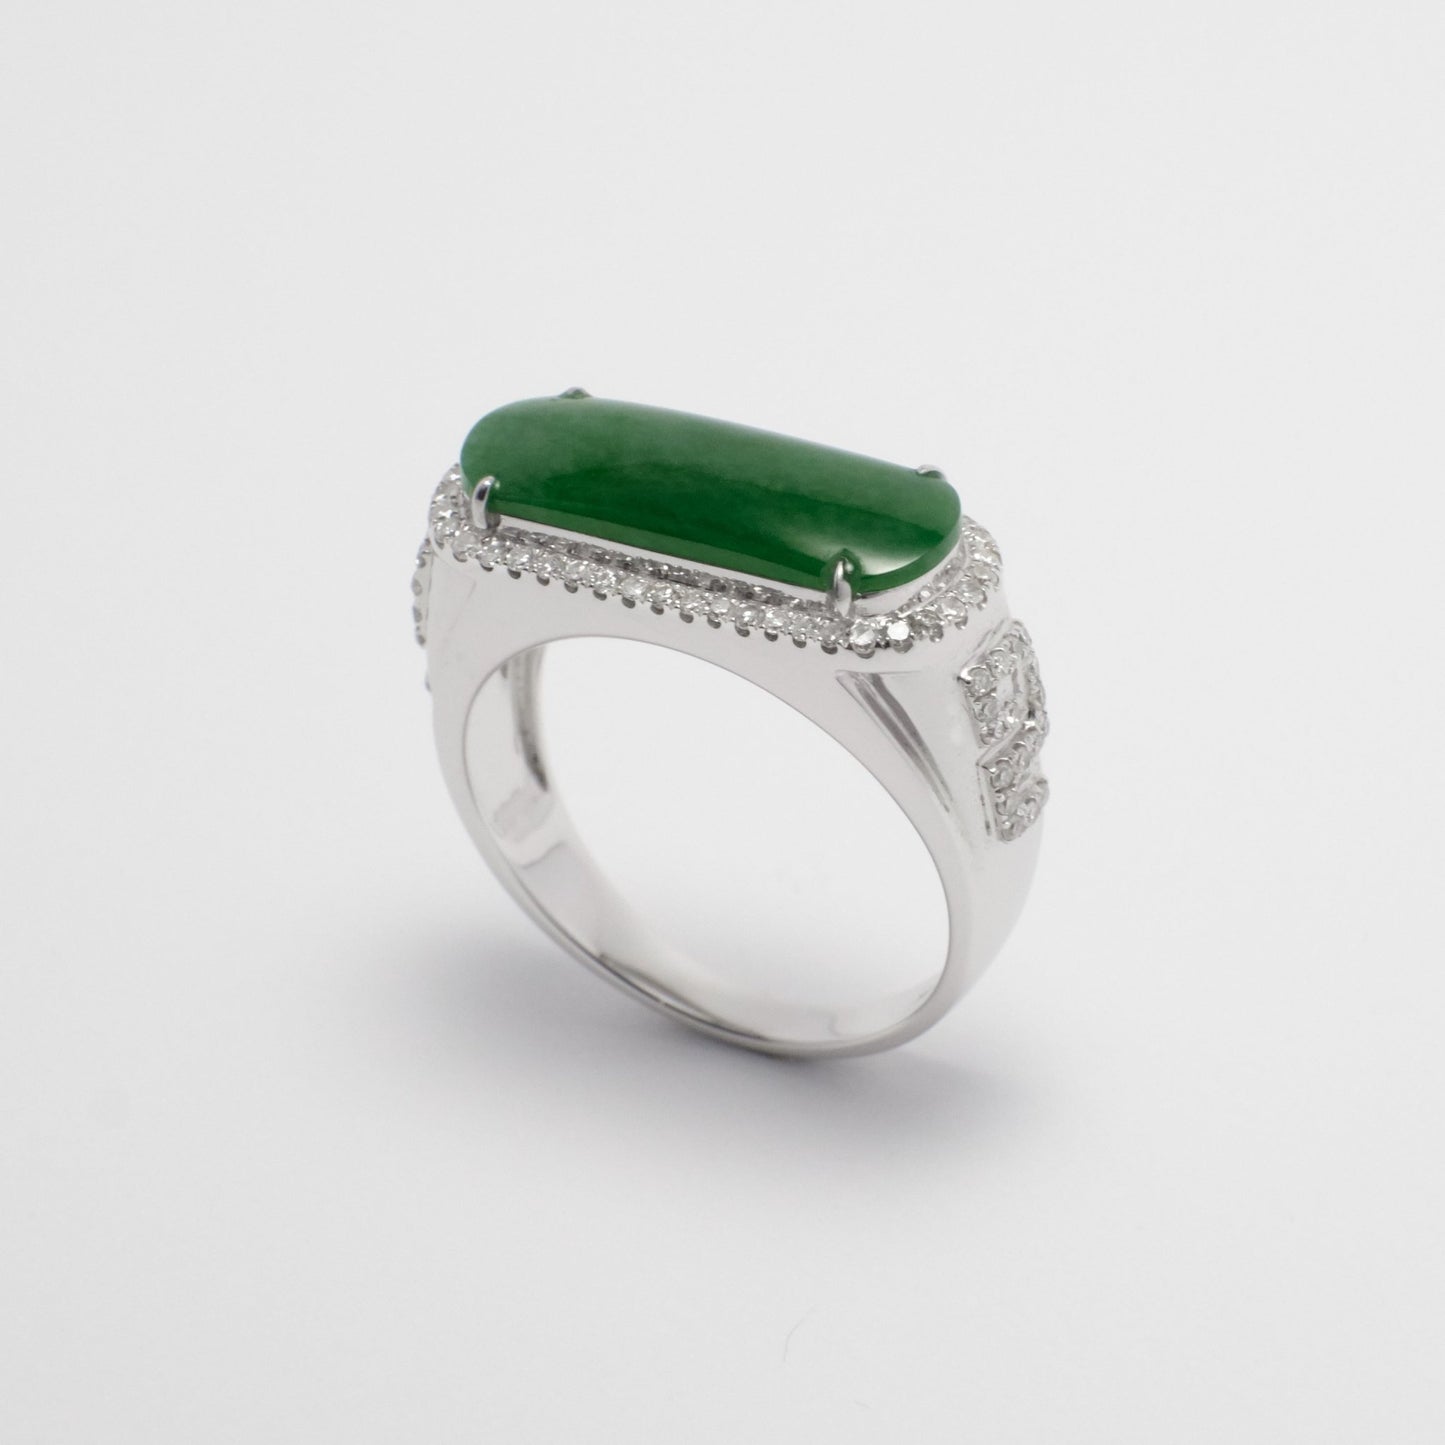 Ring - 18K白金緬甸老坑綠色馬鞍形天然翡翠配鑽石戒指 - 雅玉珠寶